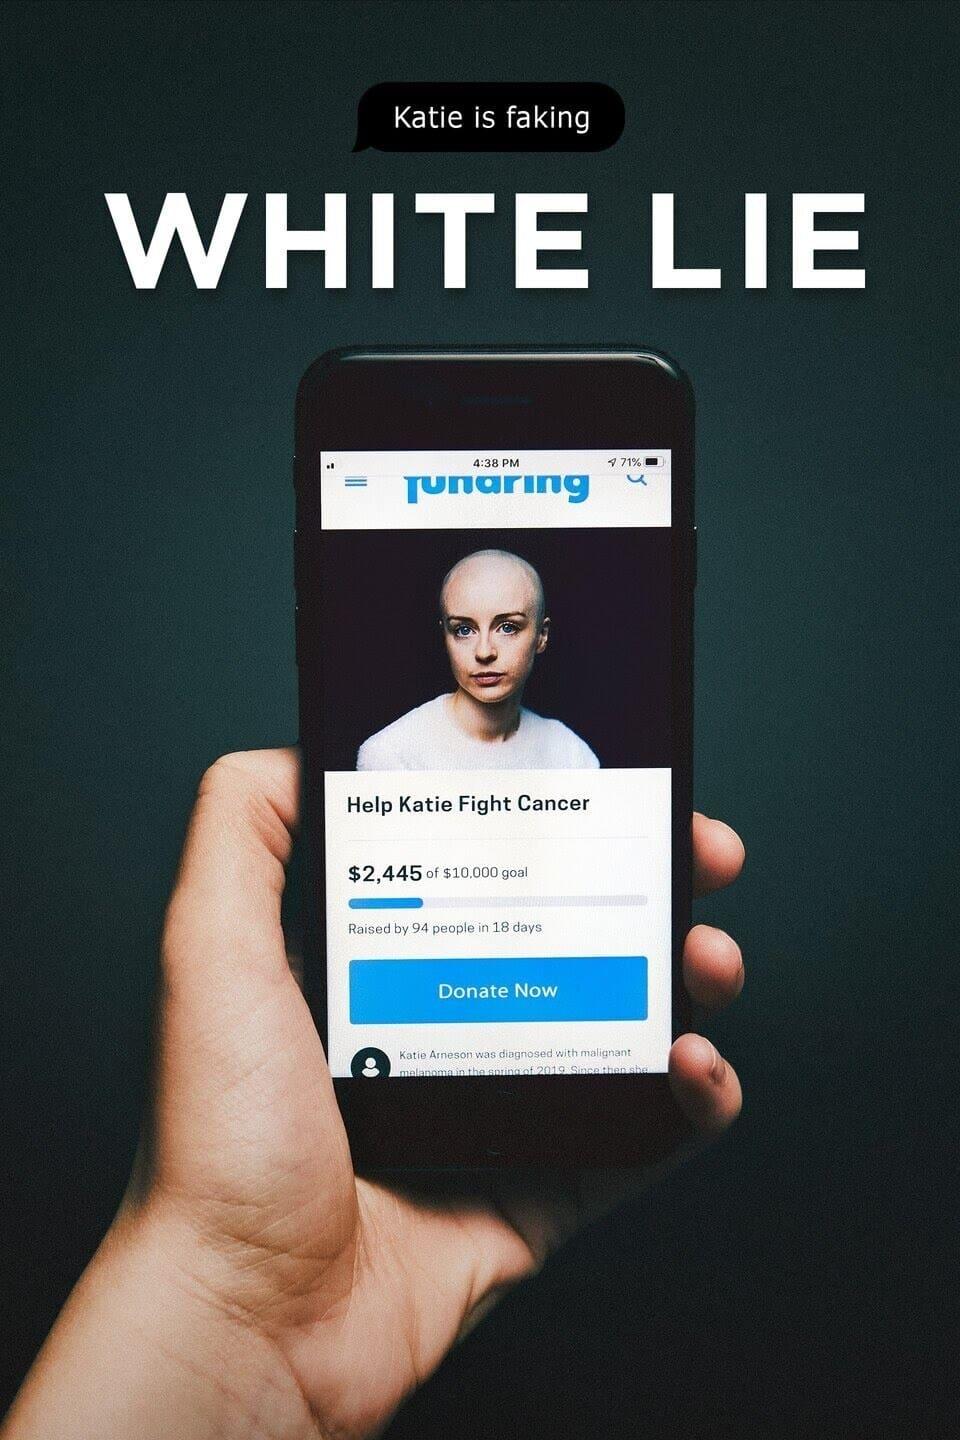 White Lie poster